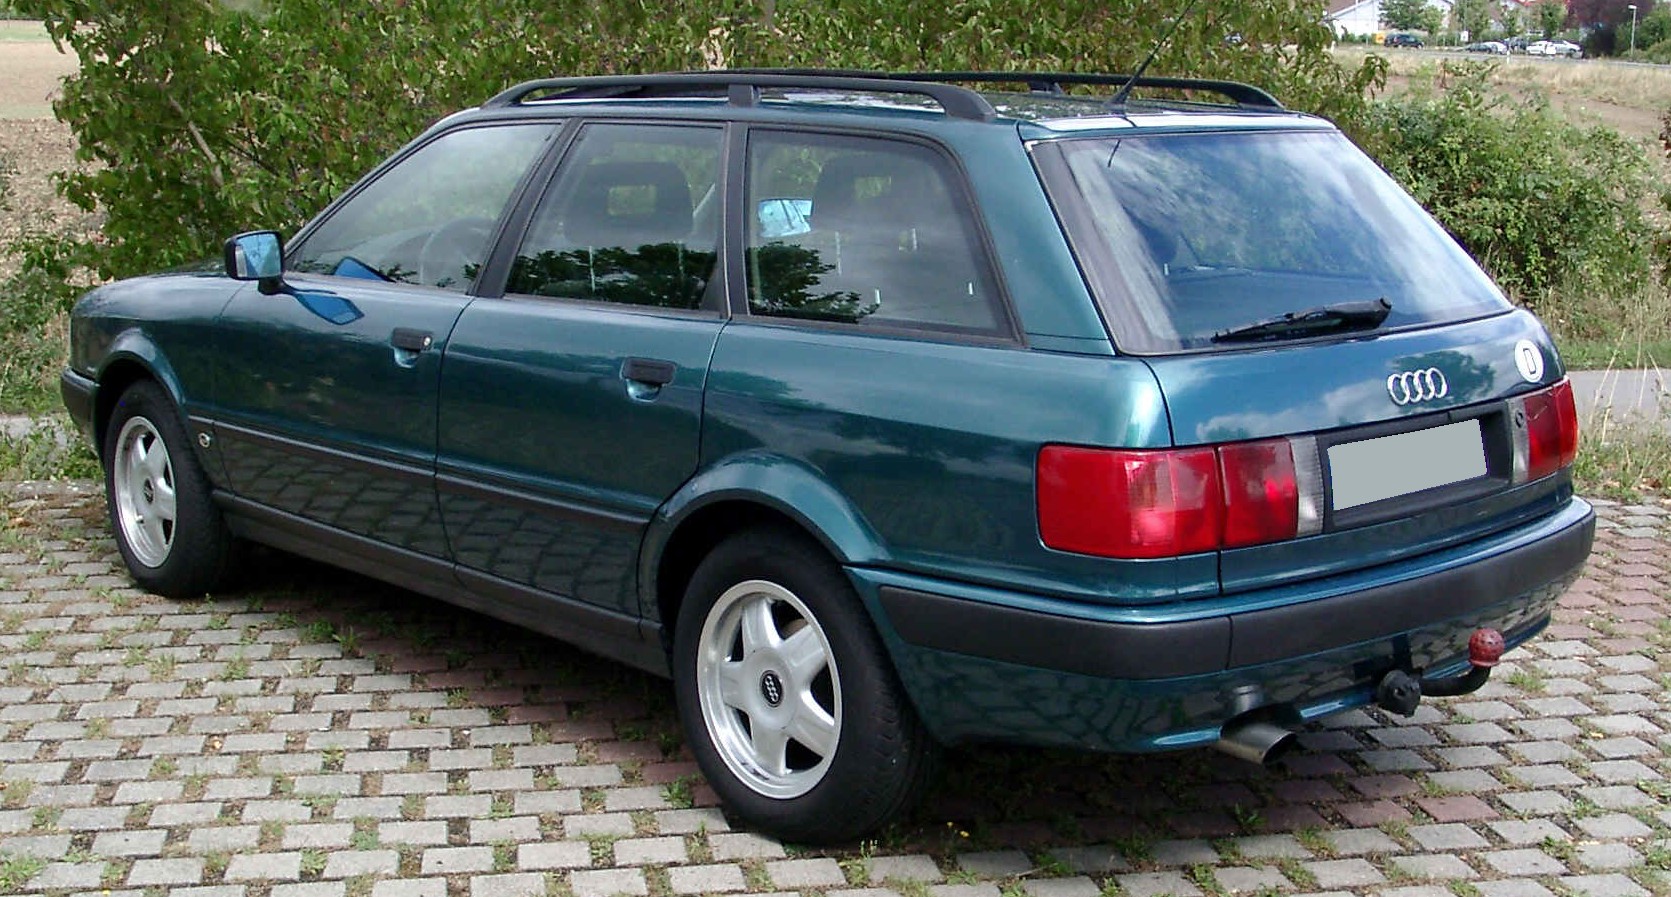 Dossier: Audi 80 Avant arrière 20080820.jpg - Wikimedia Commons